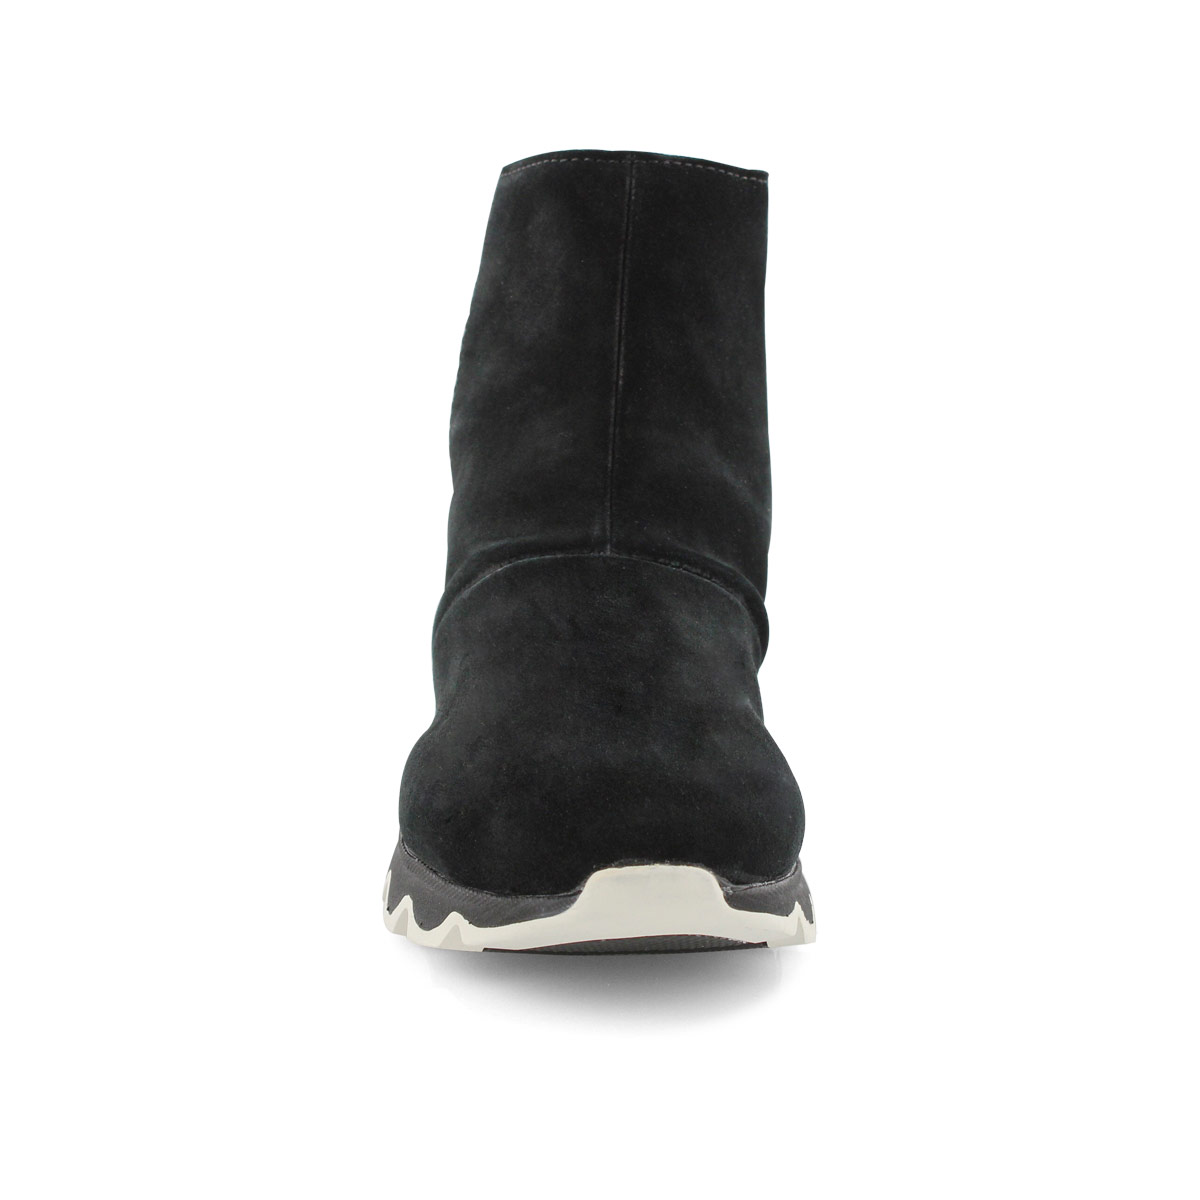 Women's KINETIC SHORT black waterproof ankle boot